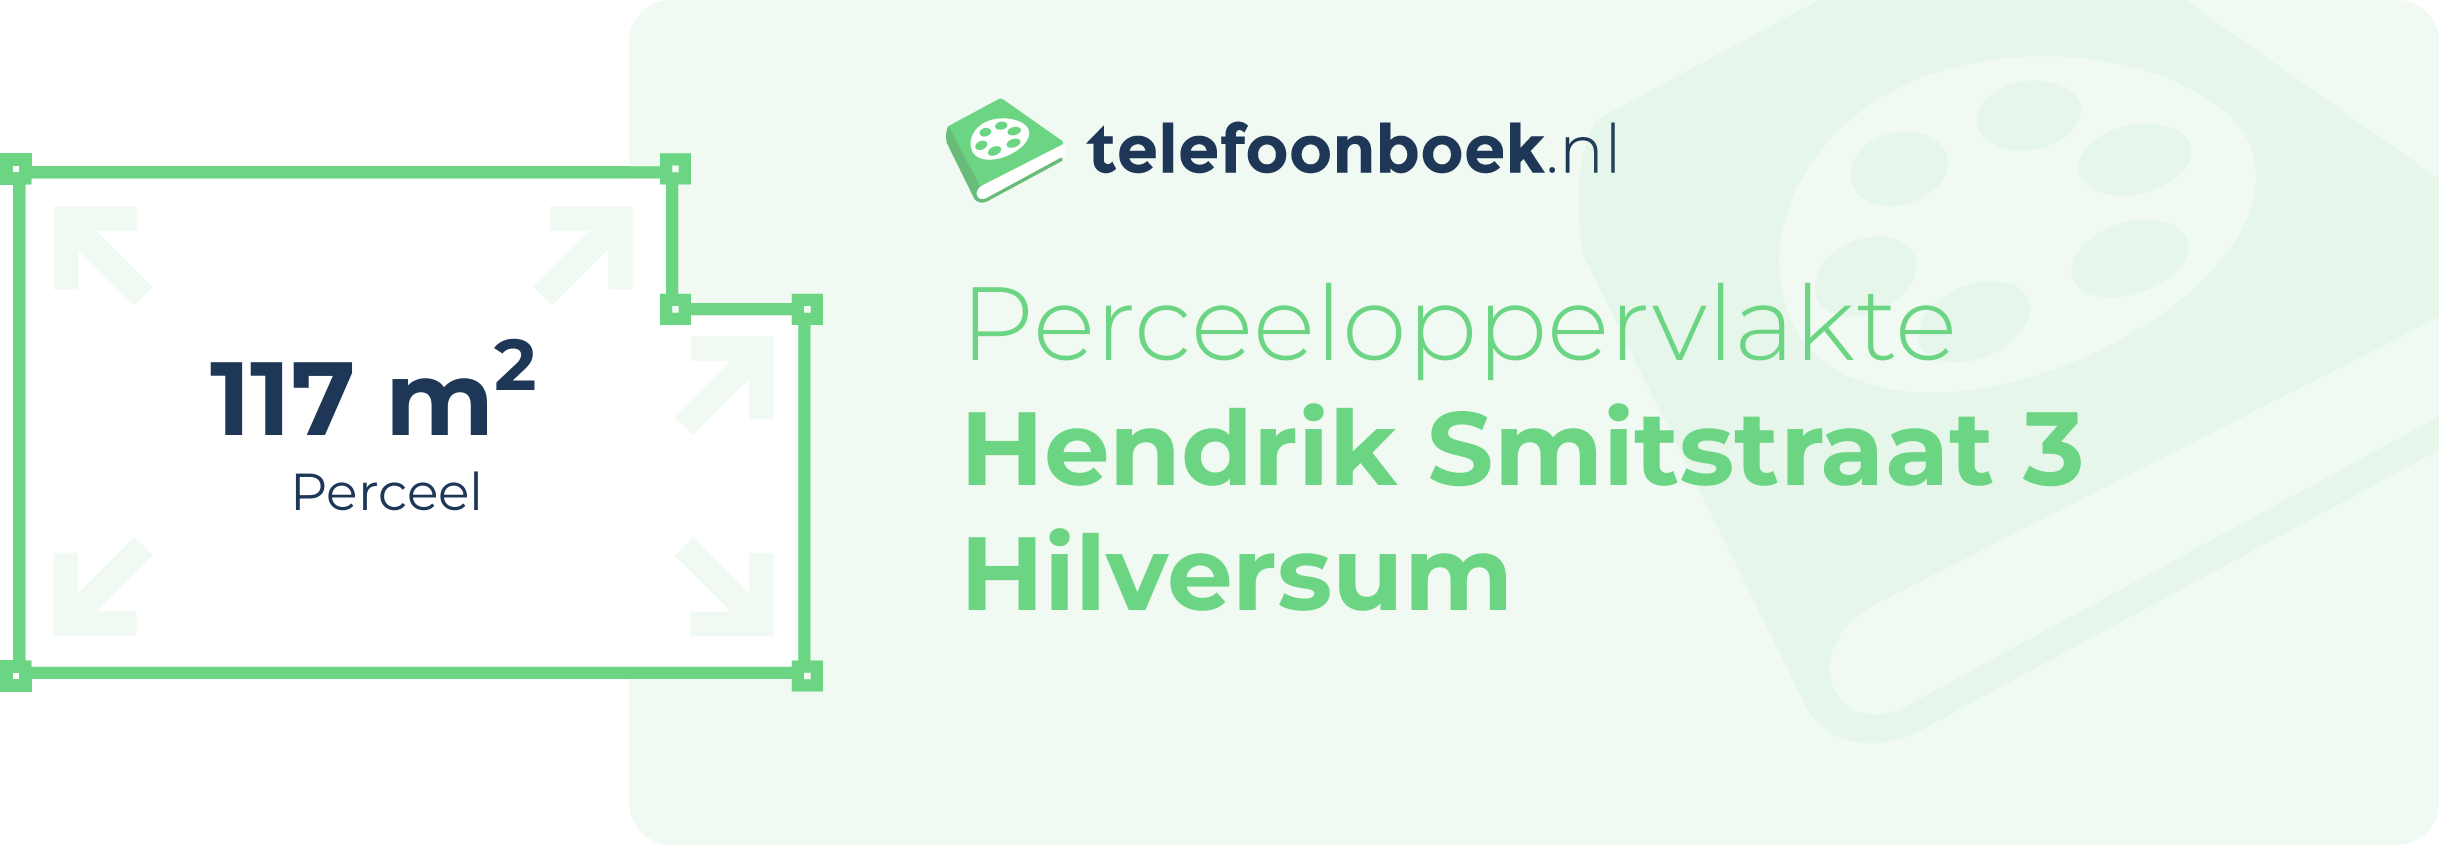 Perceeloppervlakte Hendrik Smitstraat 3 Hilversum